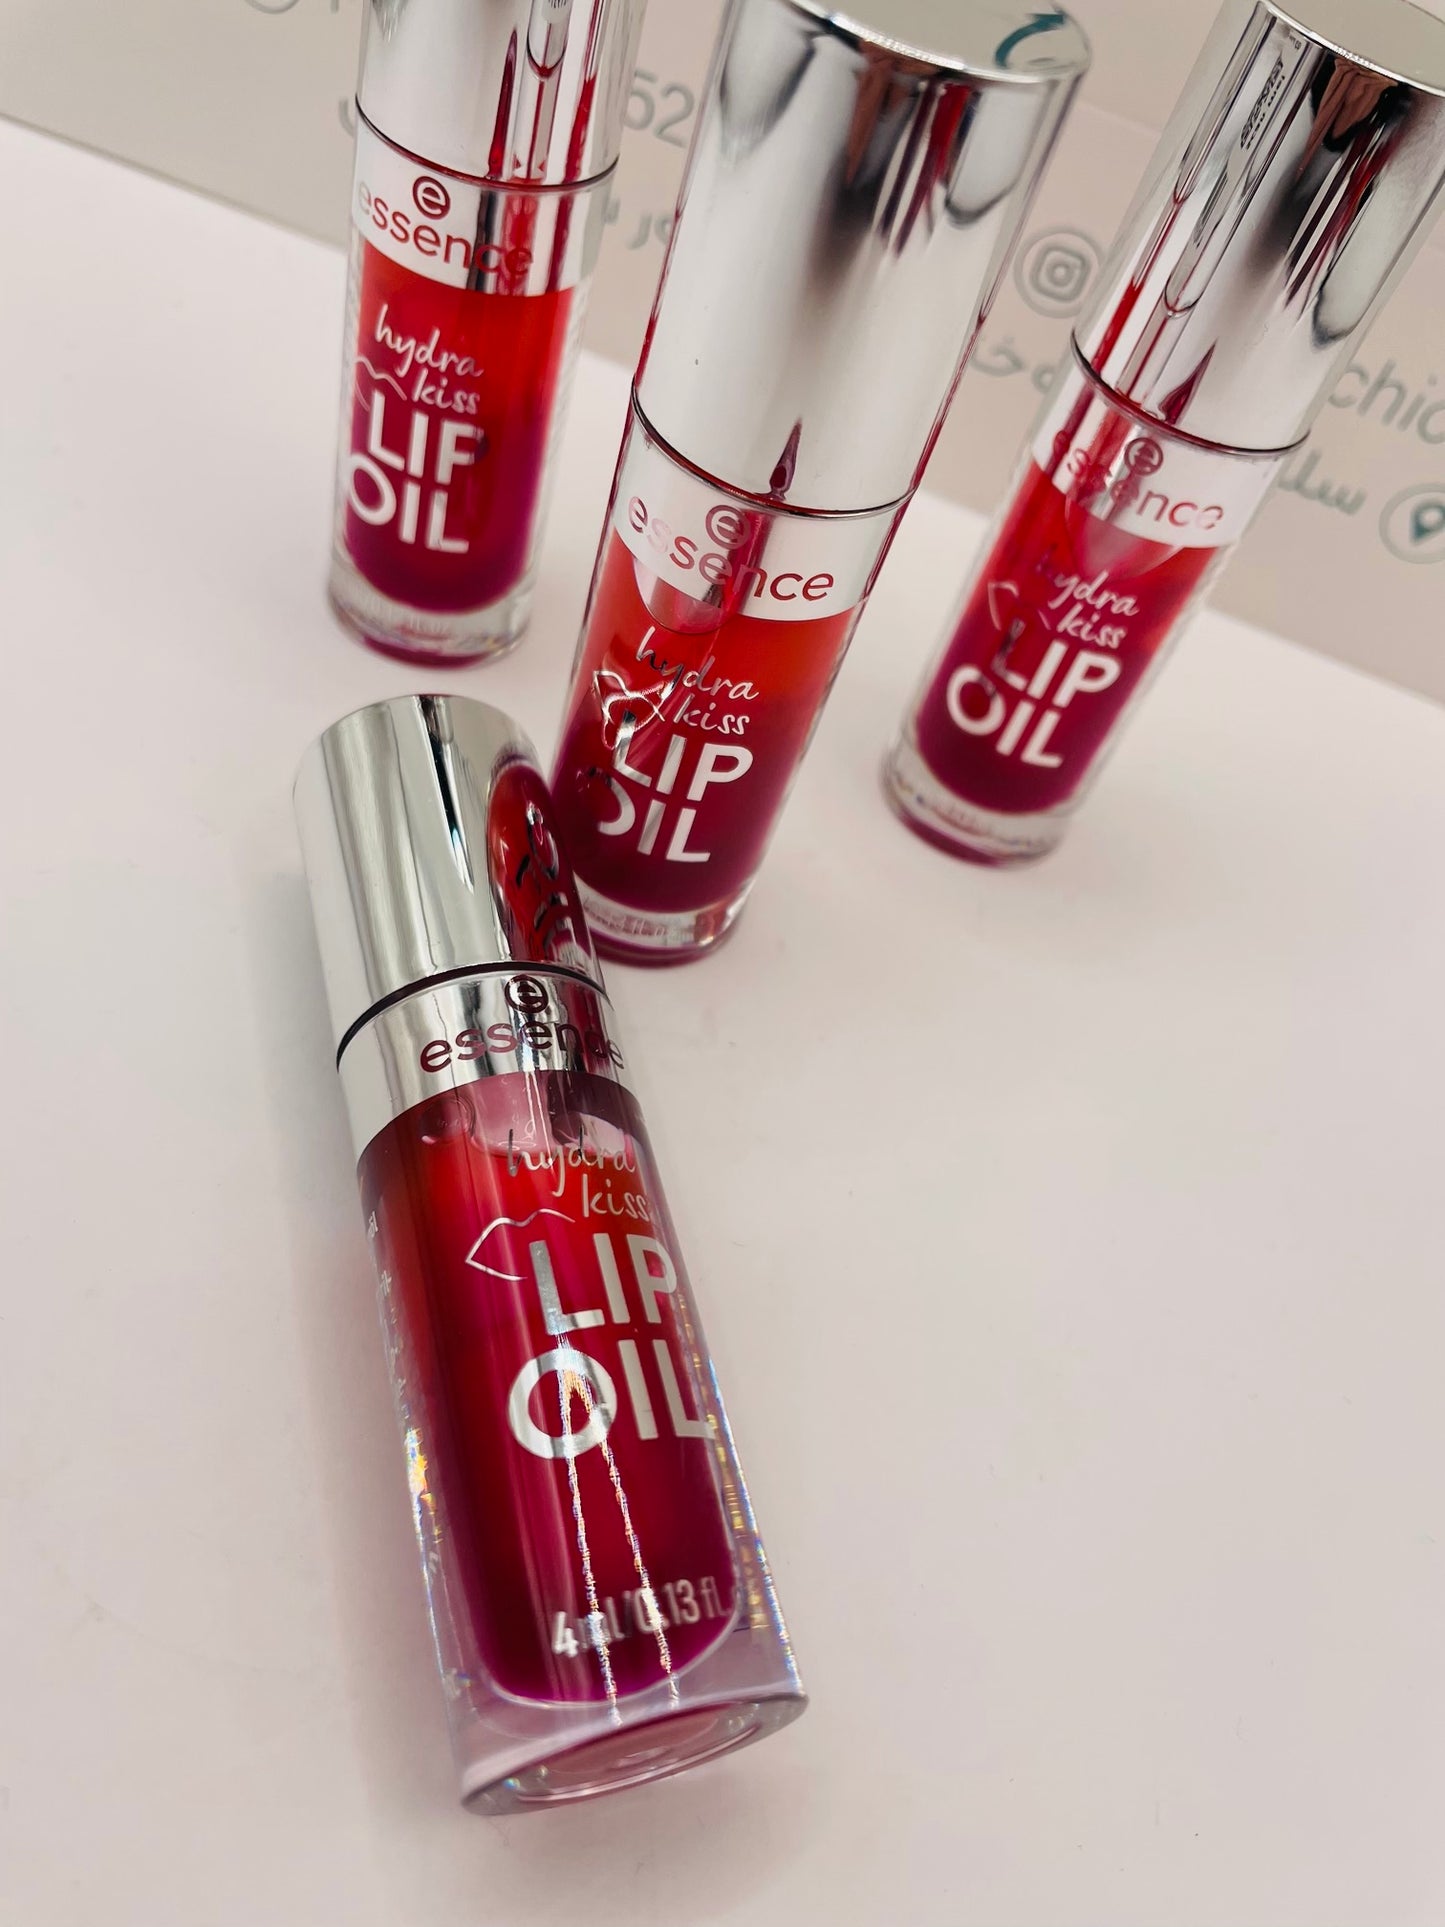 Essence lip oil